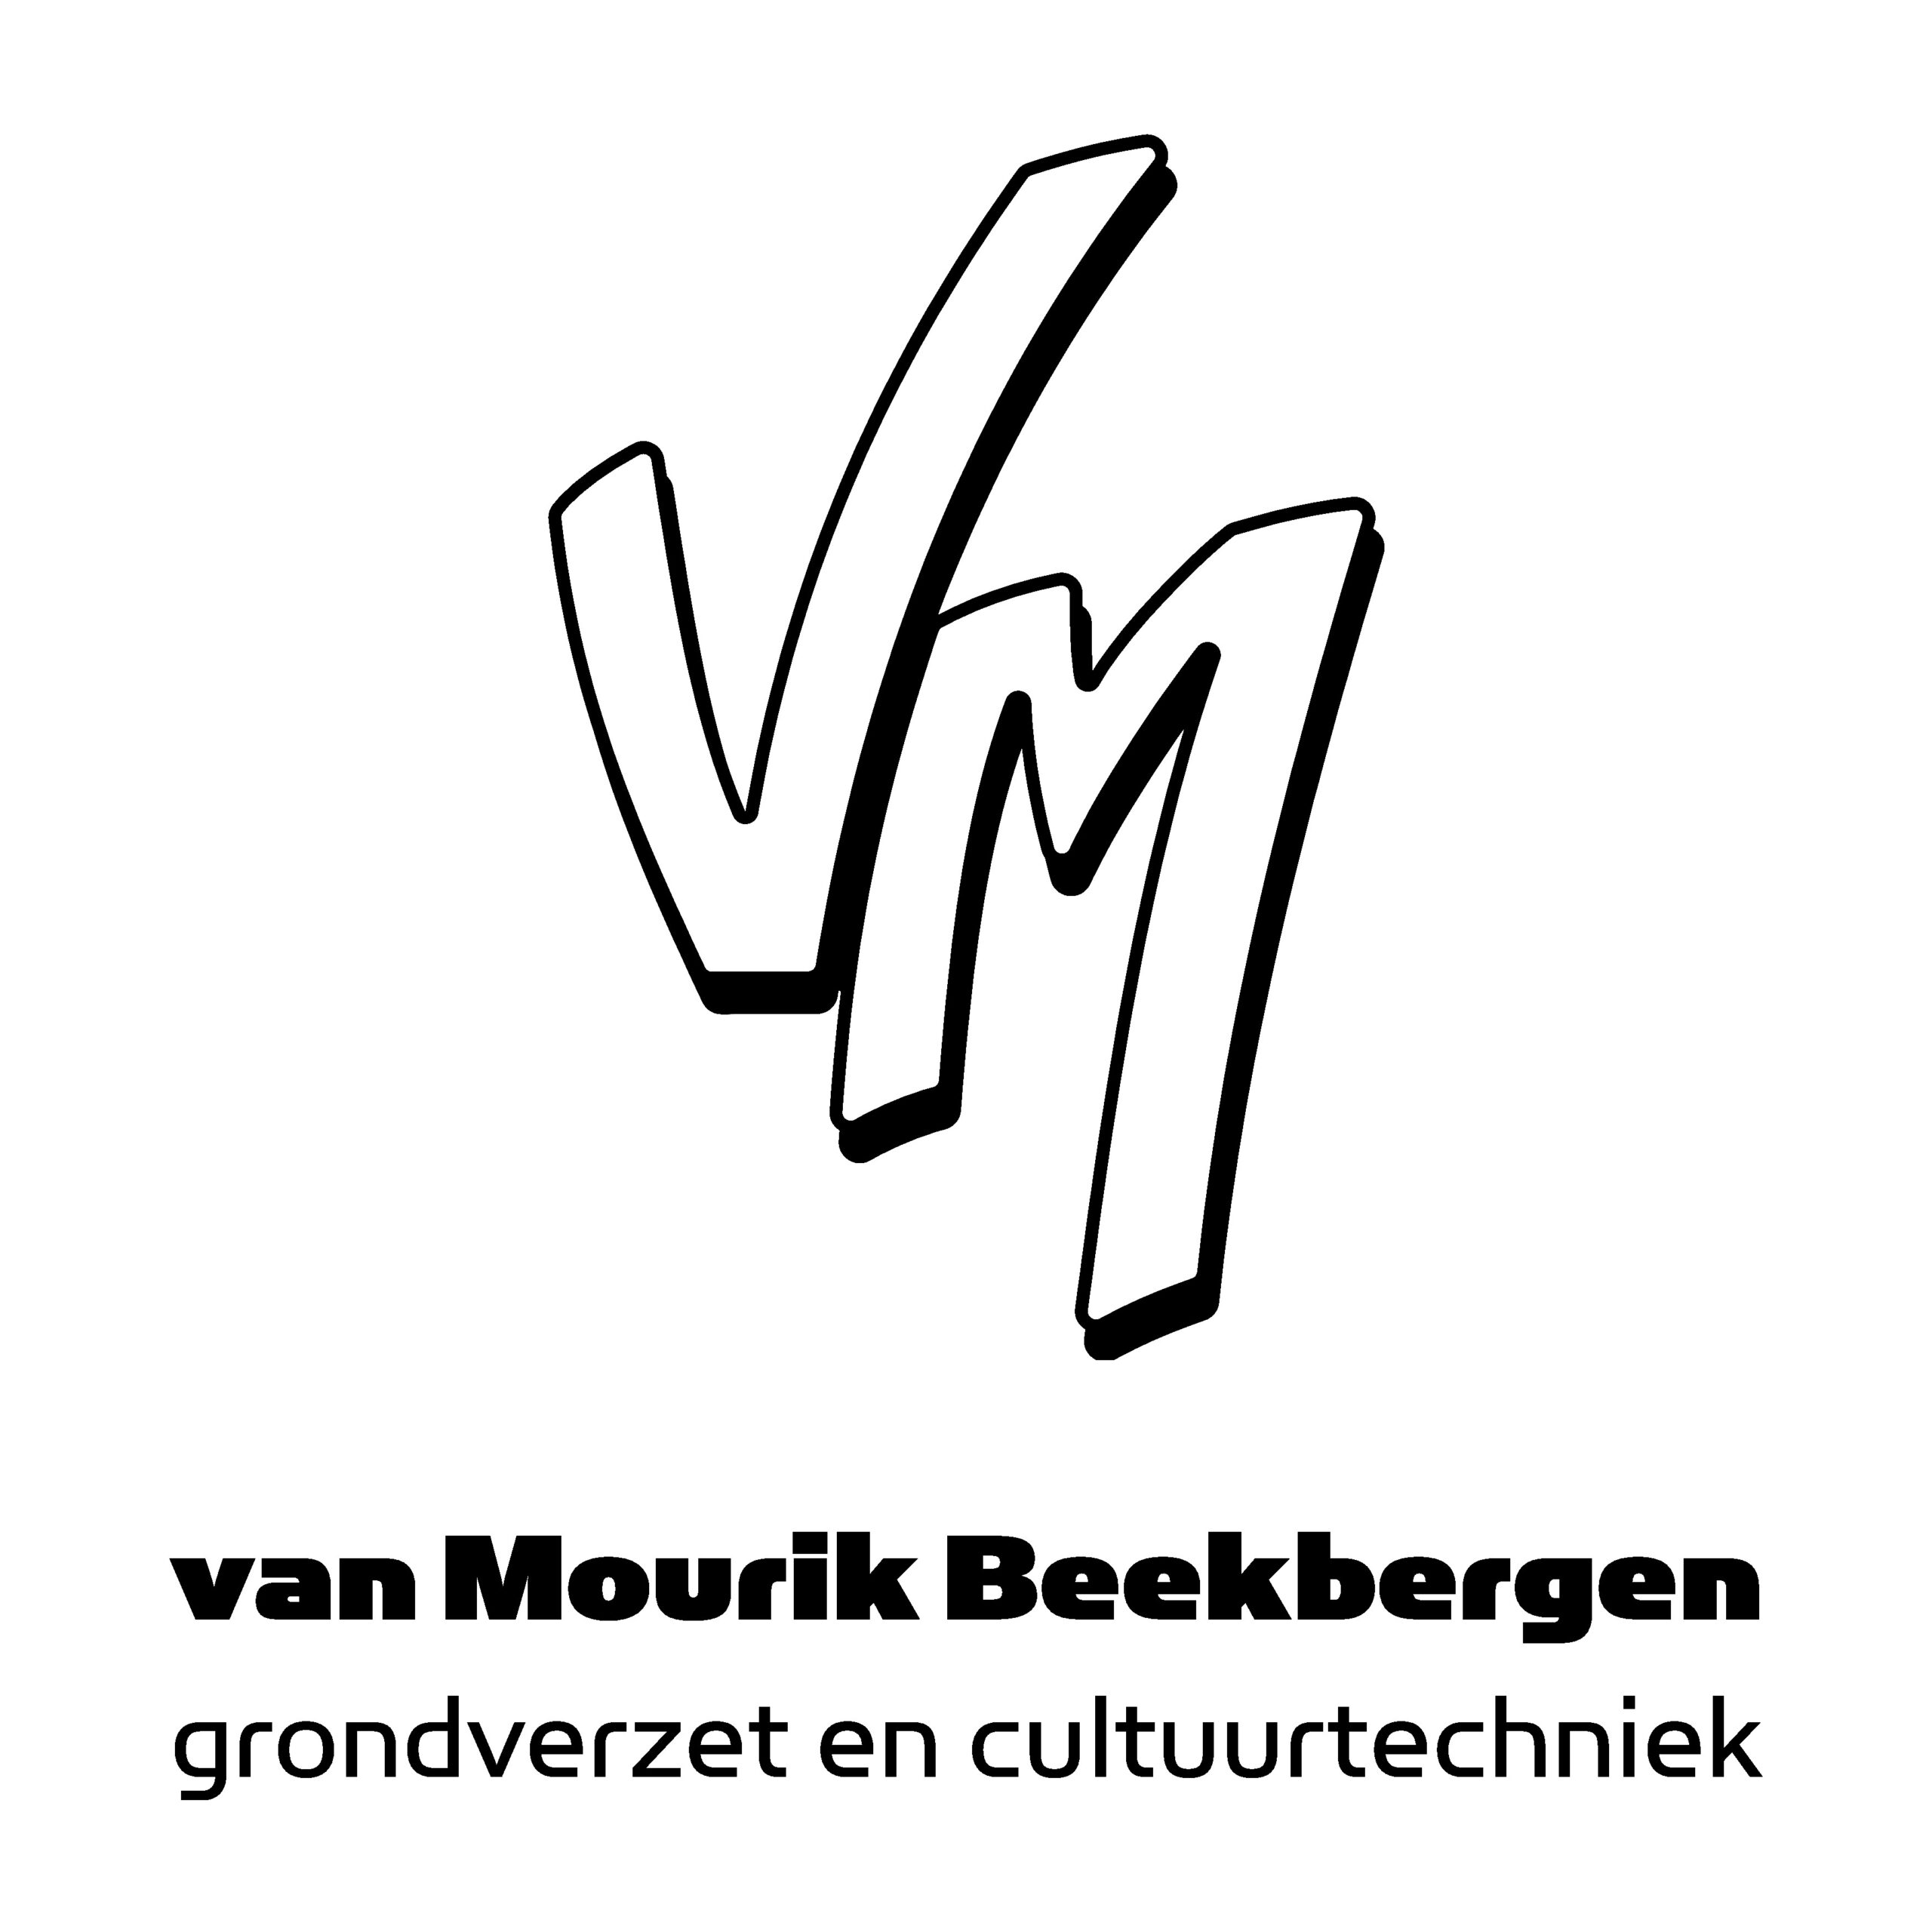 Van Mourik